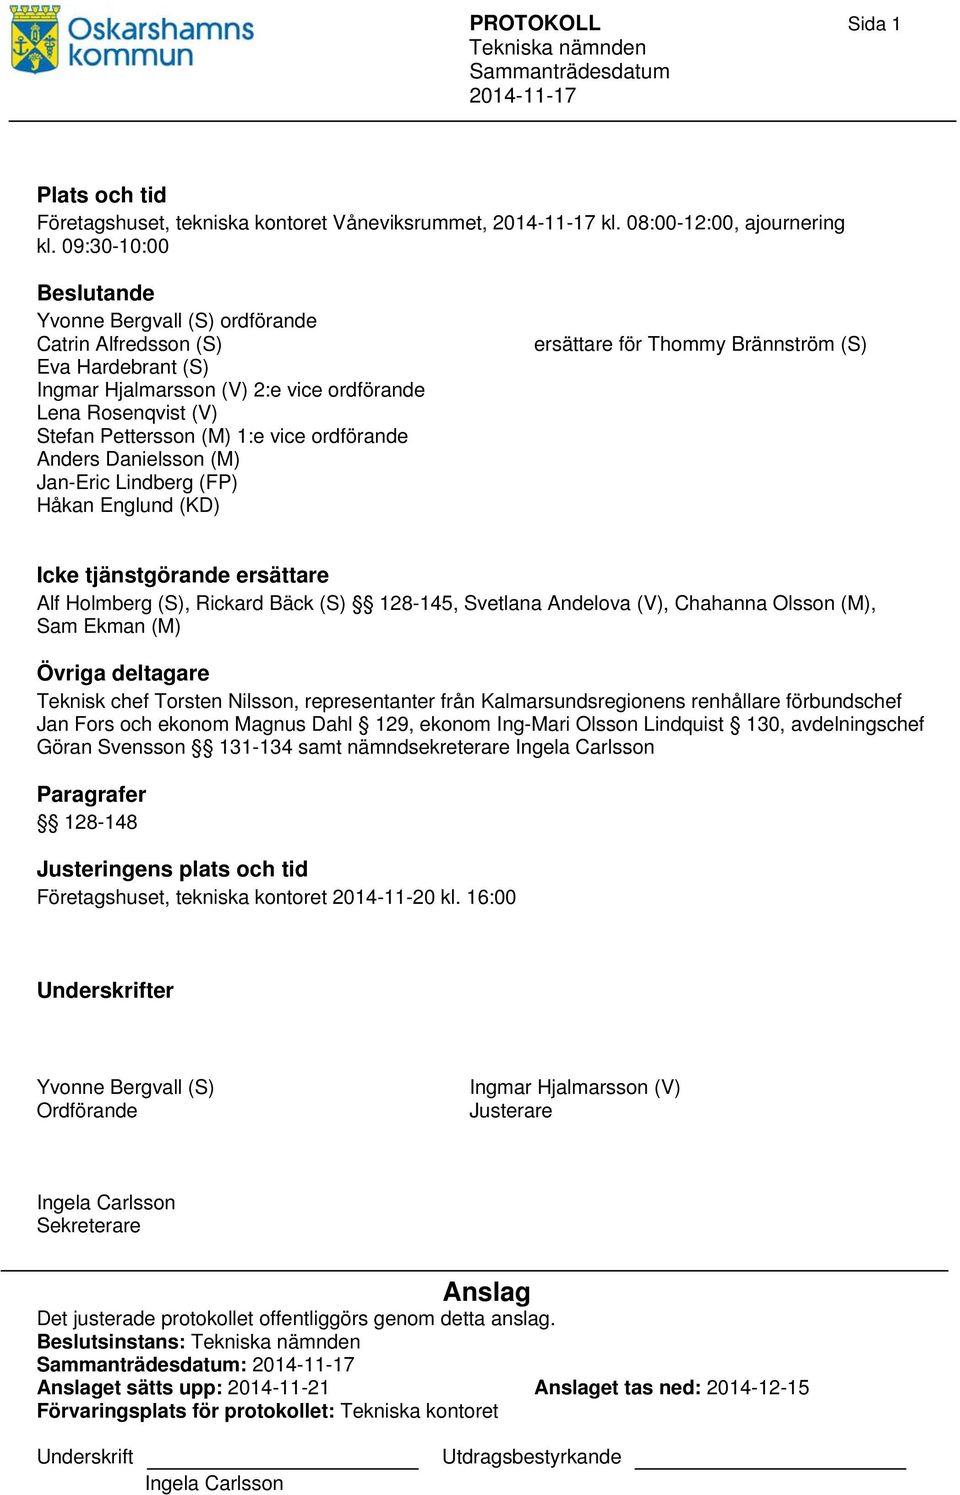 Anders Danielsson (M) Jan-Eric Lindberg (FP) Håkan Englund (KD) ersättare för Thommy Brännström (S) Icke tjänstgörande ersättare Alf Holmberg (S), Rickard Bäck (S) 128-145, Svetlana Andelova (V),